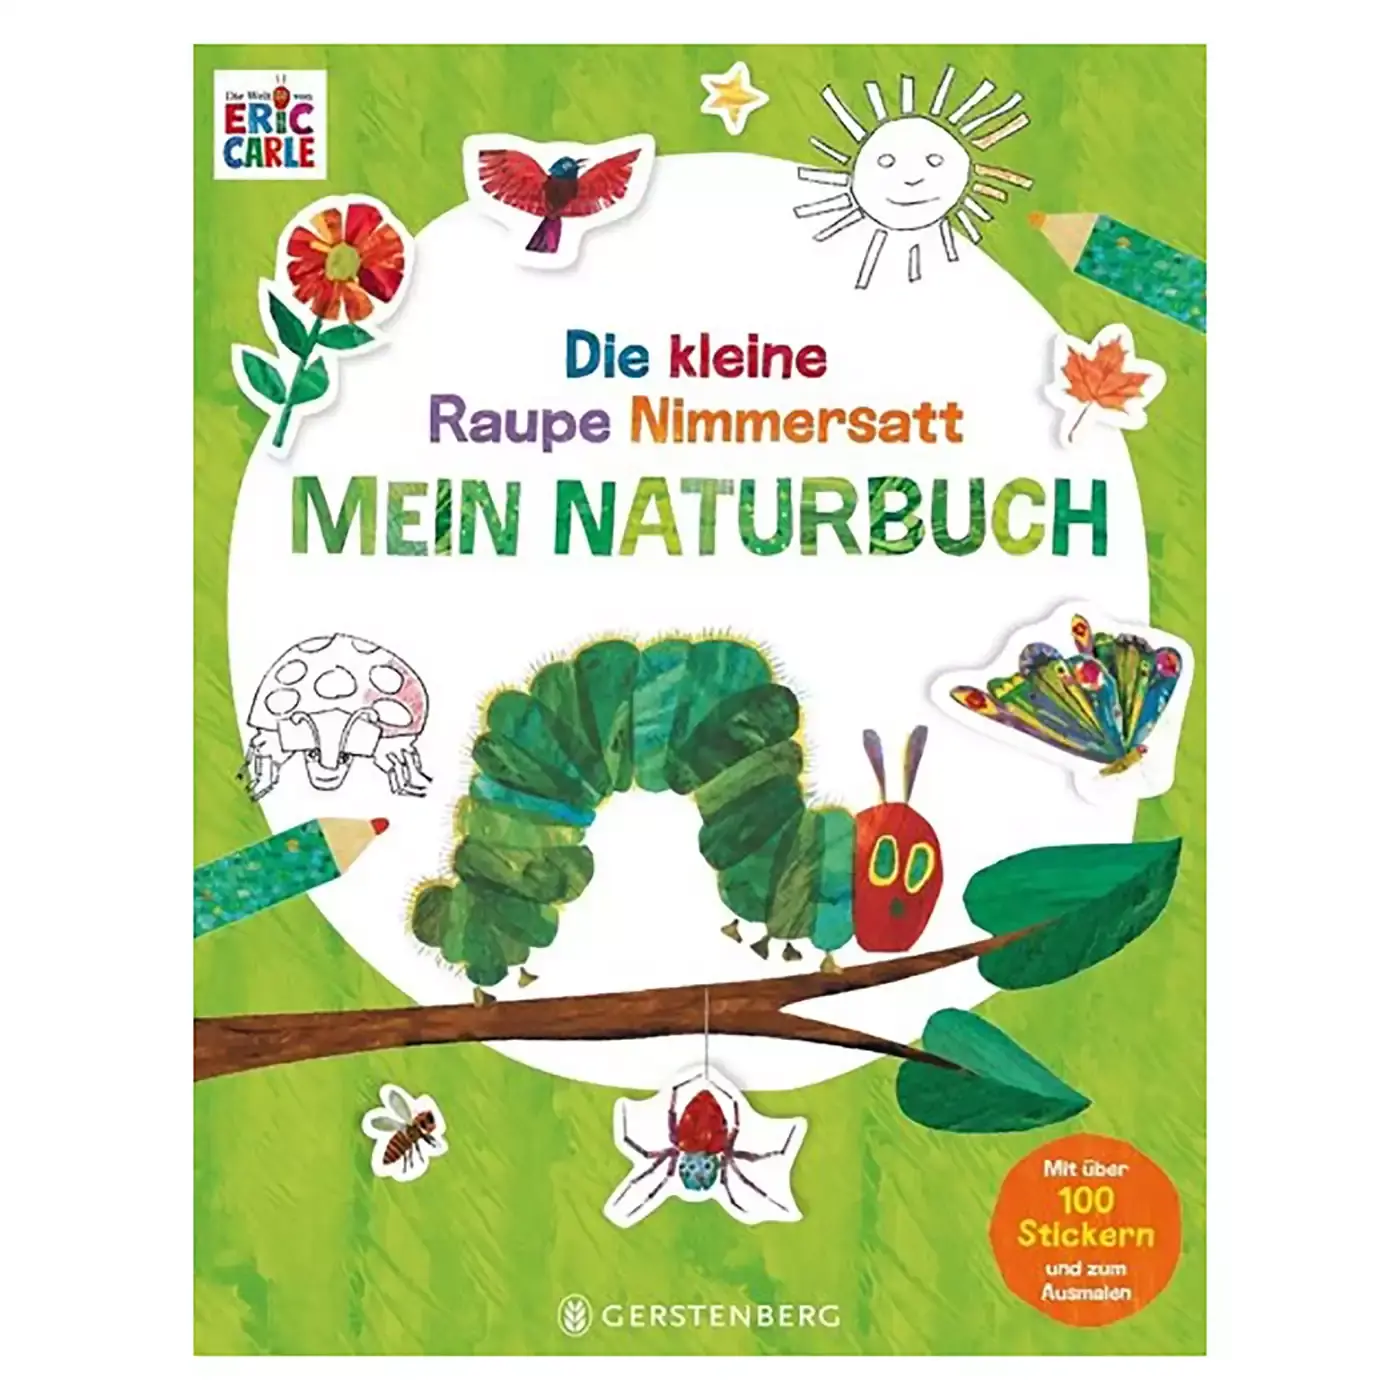 Die kleine Raupe Nimmersatt - Mein Naturbuch Gerstenberg 2000579307805 1